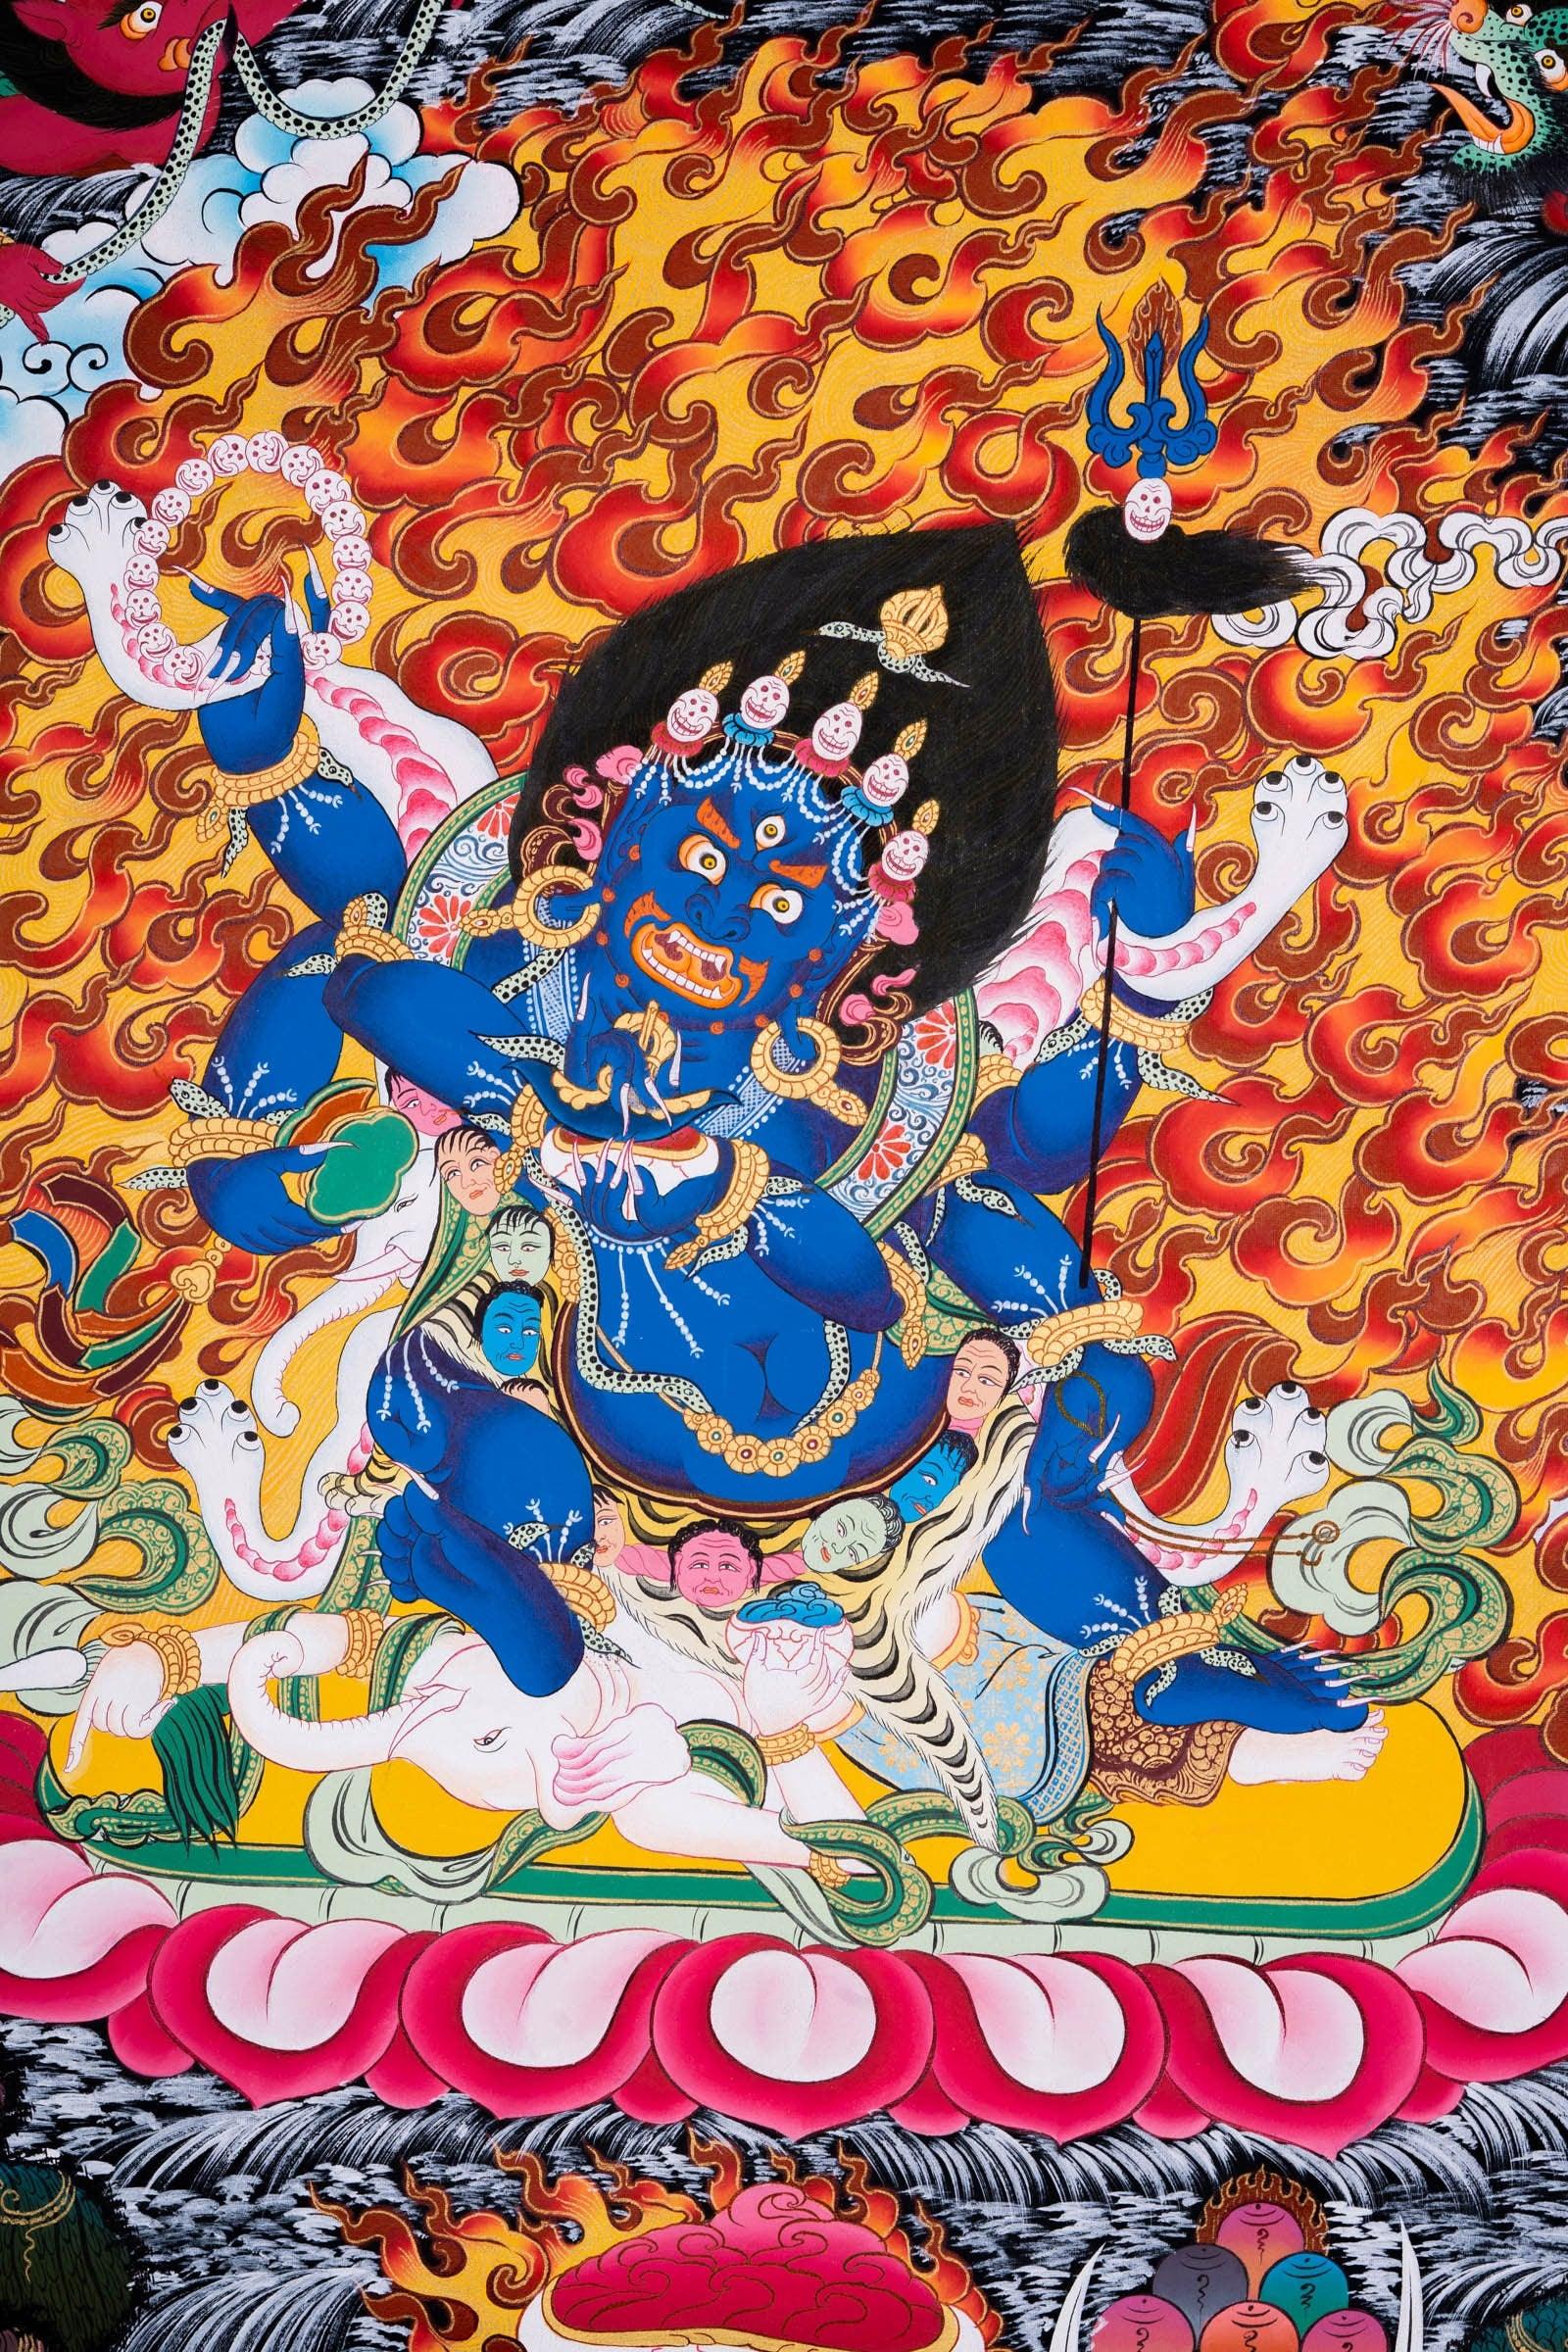 6 arm Mahakala Thangka Painting - Himalayas Shop